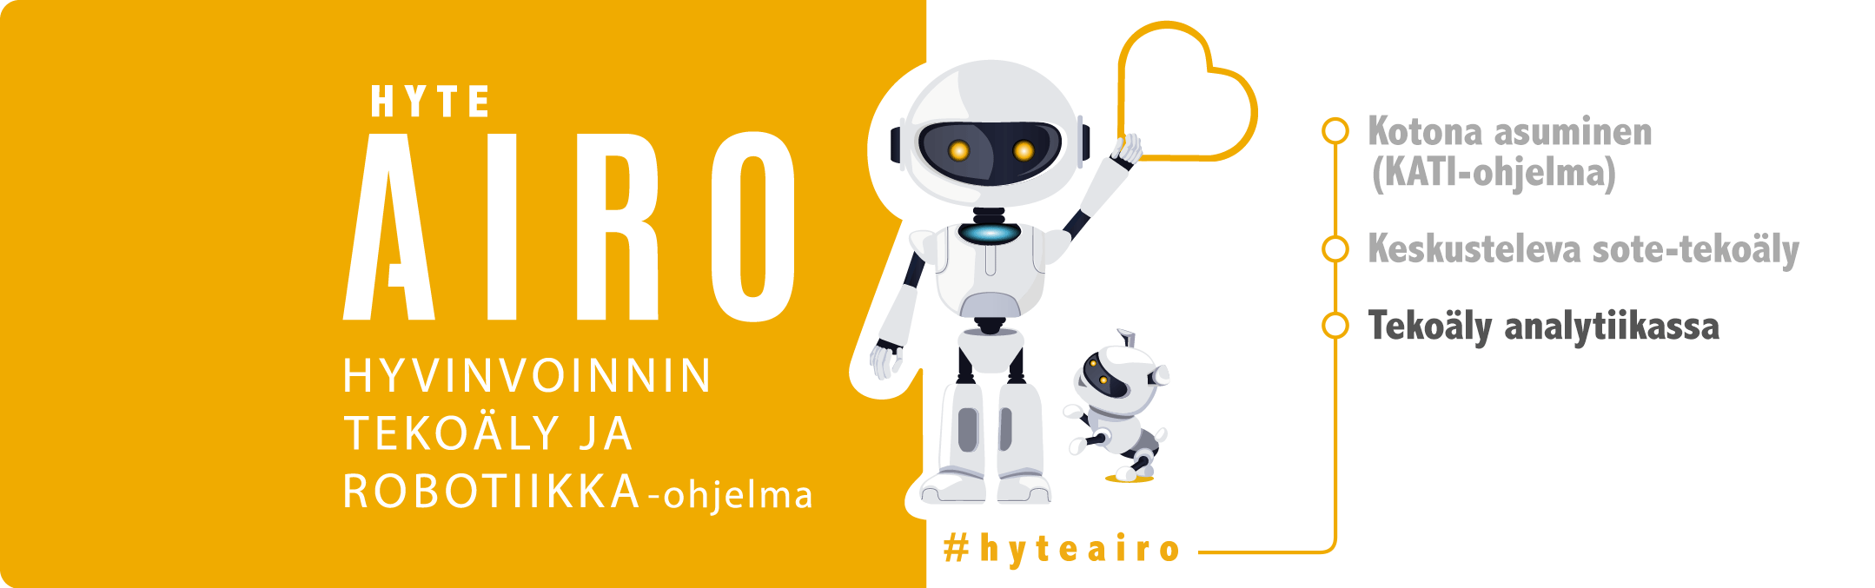 Hyteairon logo roboteilla, hyvinvoinnin ja tekoäly ja robotiikka-ohjelma. Kotona asuminen (KATI-ohjelma)(boldattuna), Keskusteleva sote-tekoäly ja Tekoäly analytiikassa.